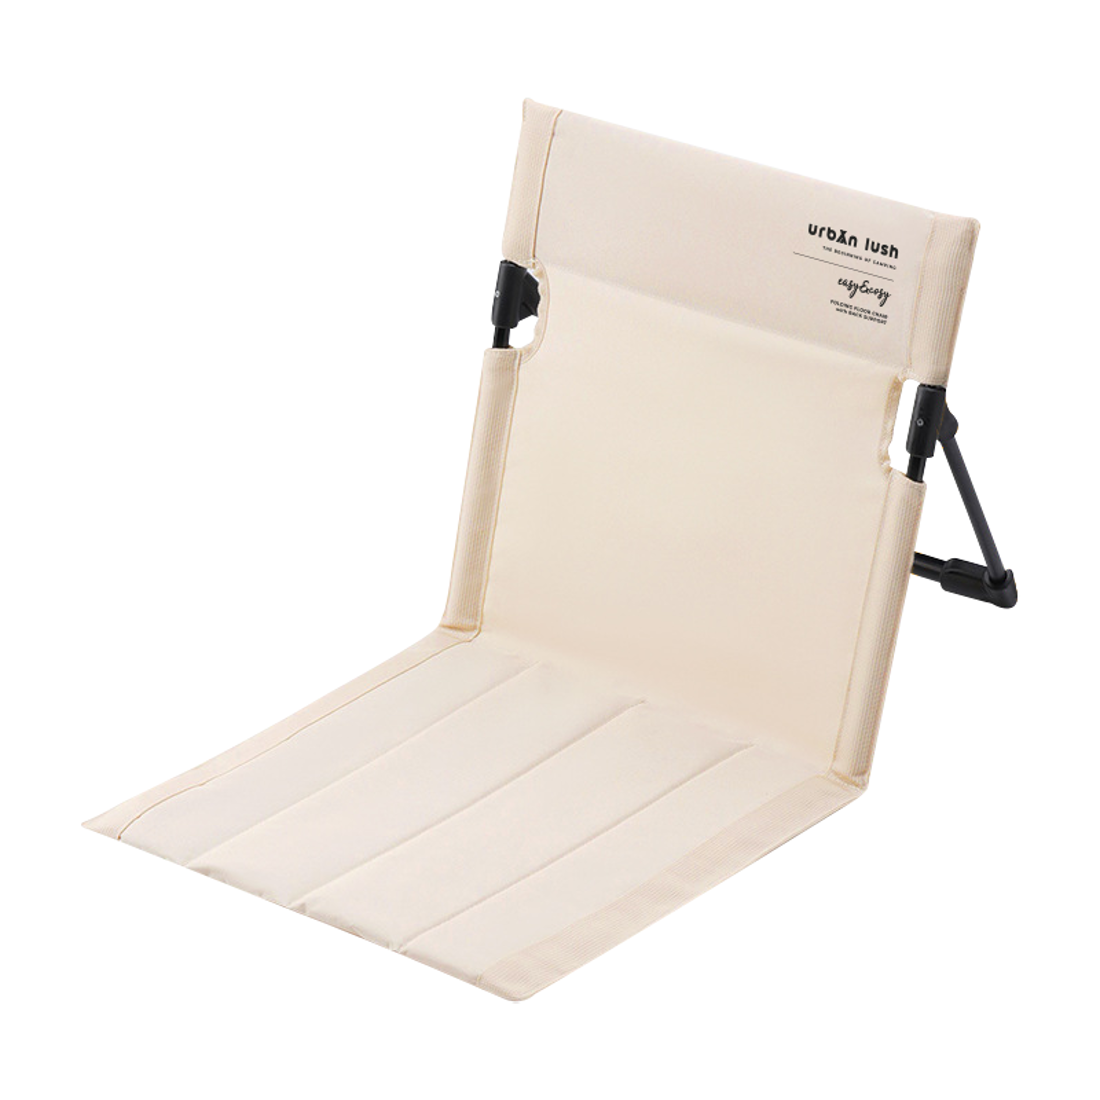 어반러쉬 폴딩 플로어 경량 접이식 폴딩 휴대용 등받이 좌식 의자 - OCmall 에서 판매 되는 상품을 확인해보세요. | 오씨몰 | 데얼스 공식 스토어